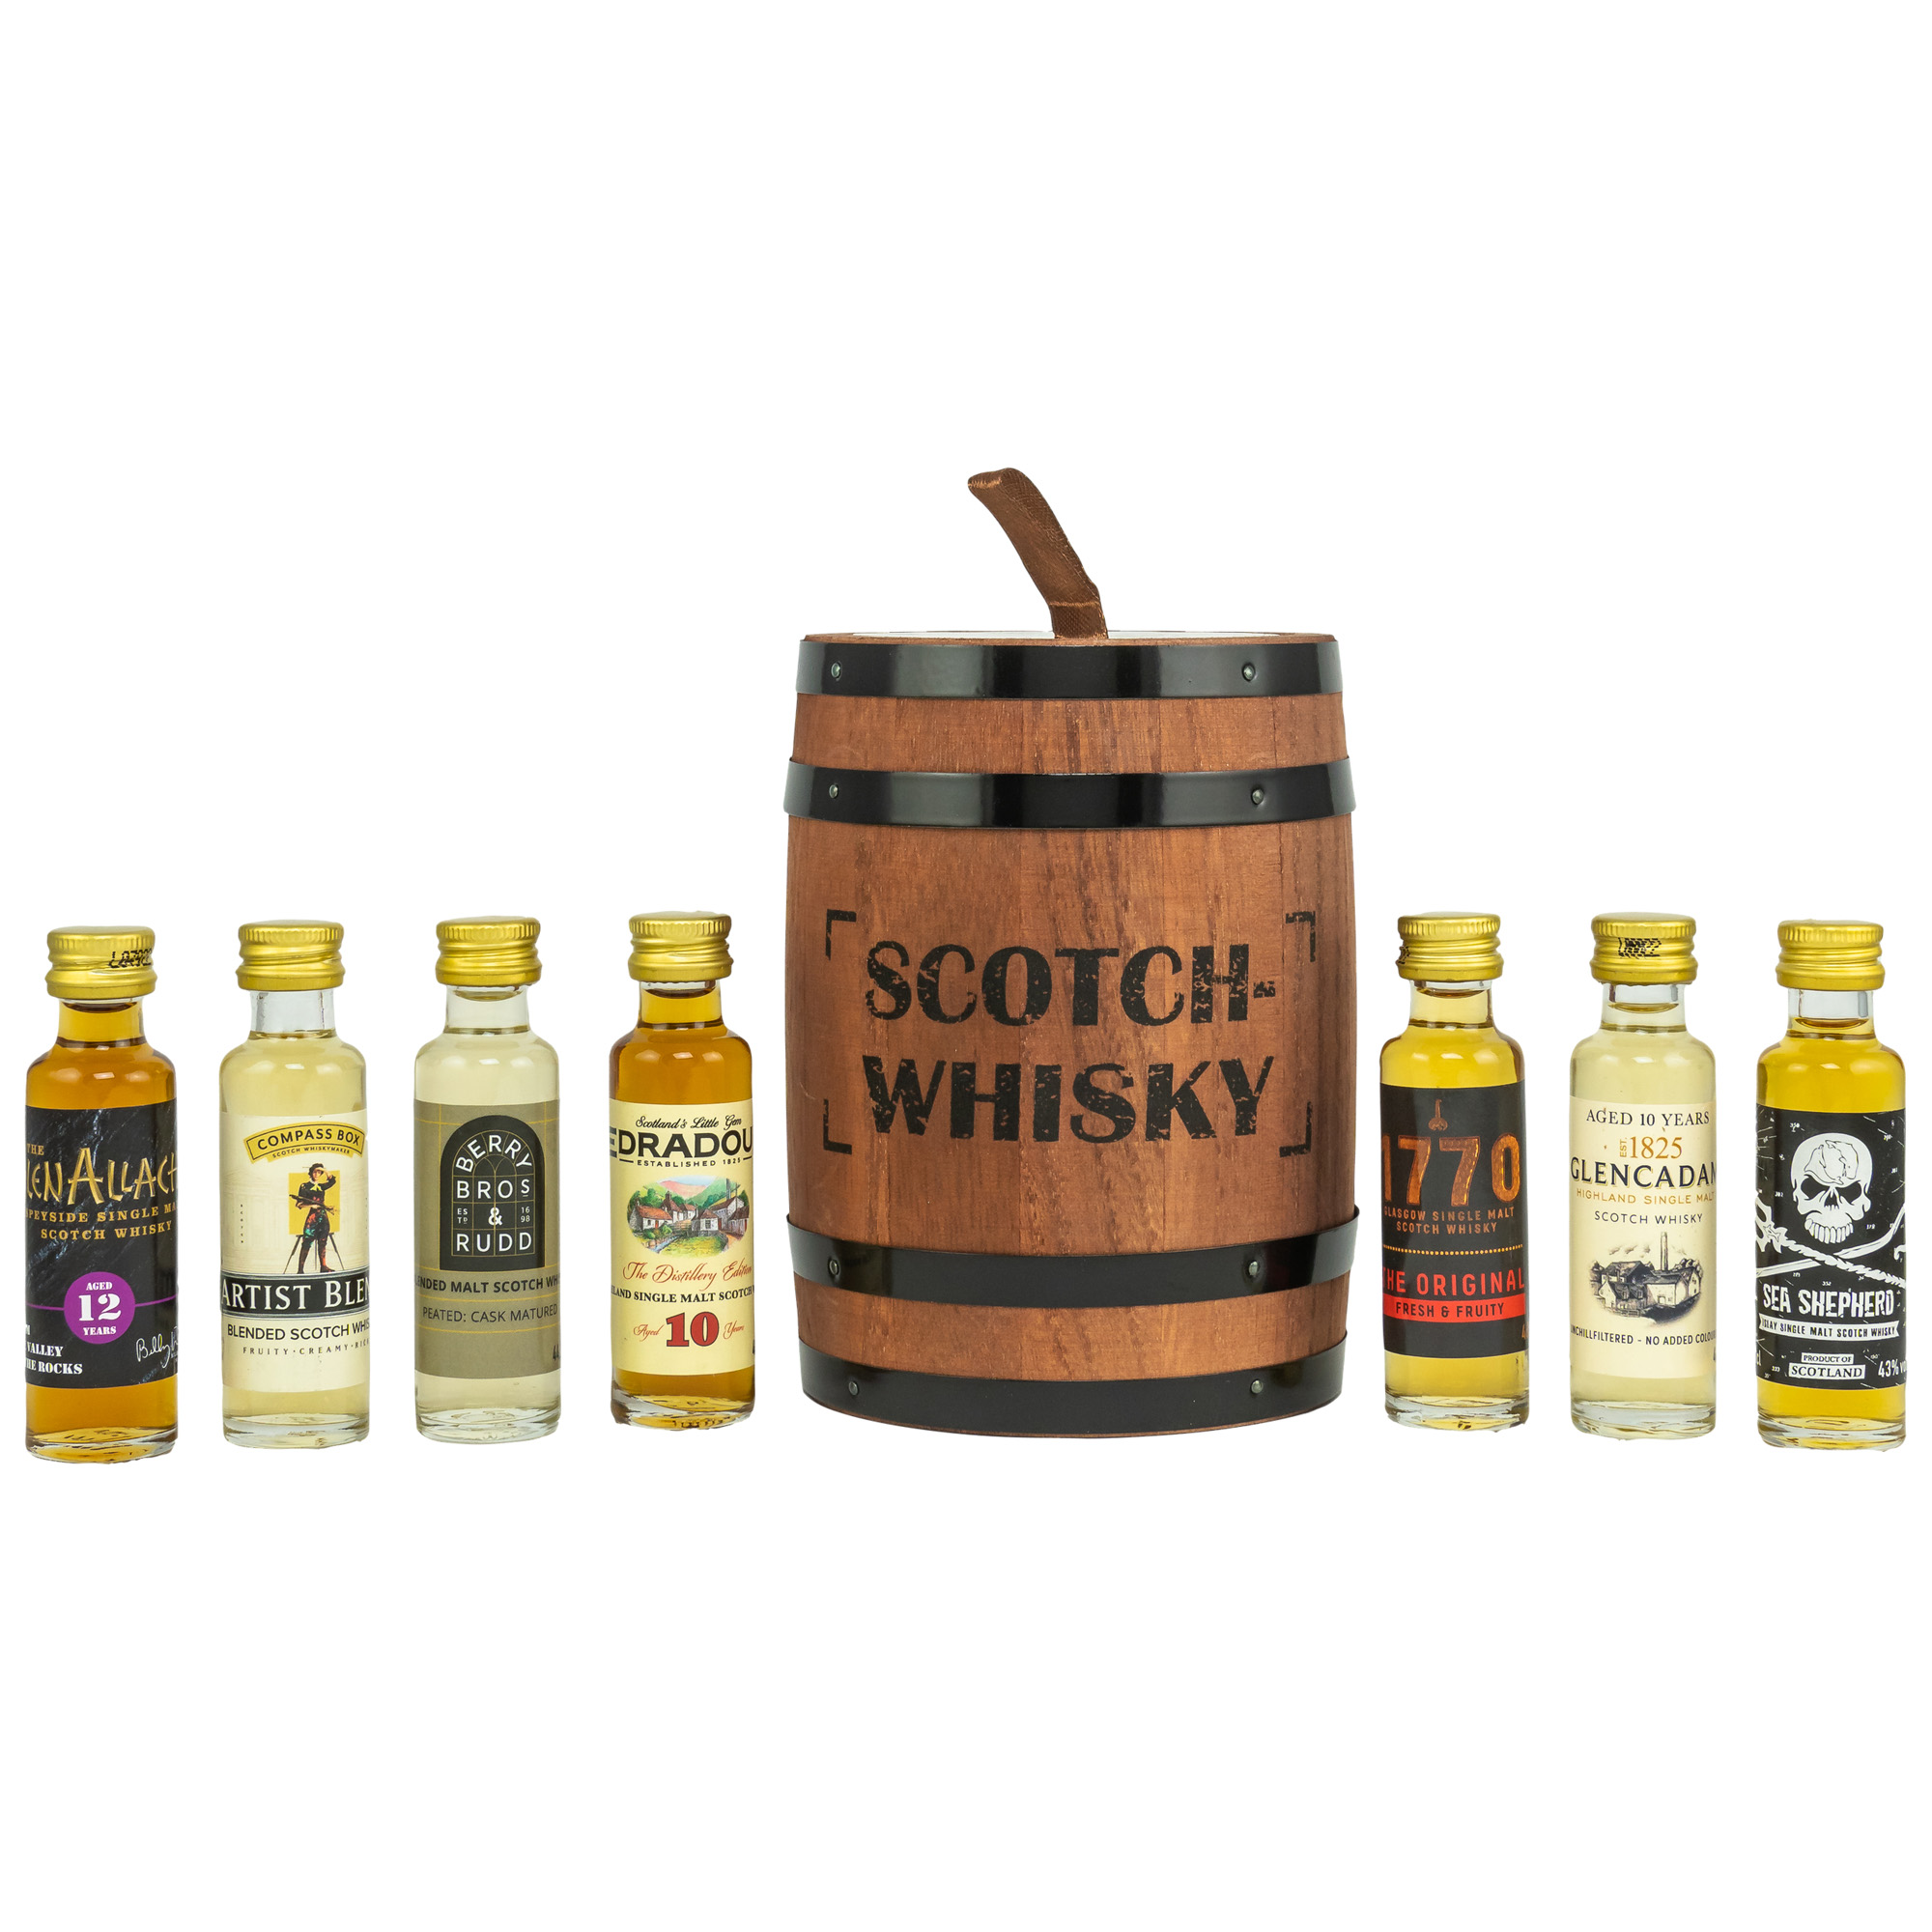 Scotch Whisky Tasting Fass 7x 0,02l - 44%